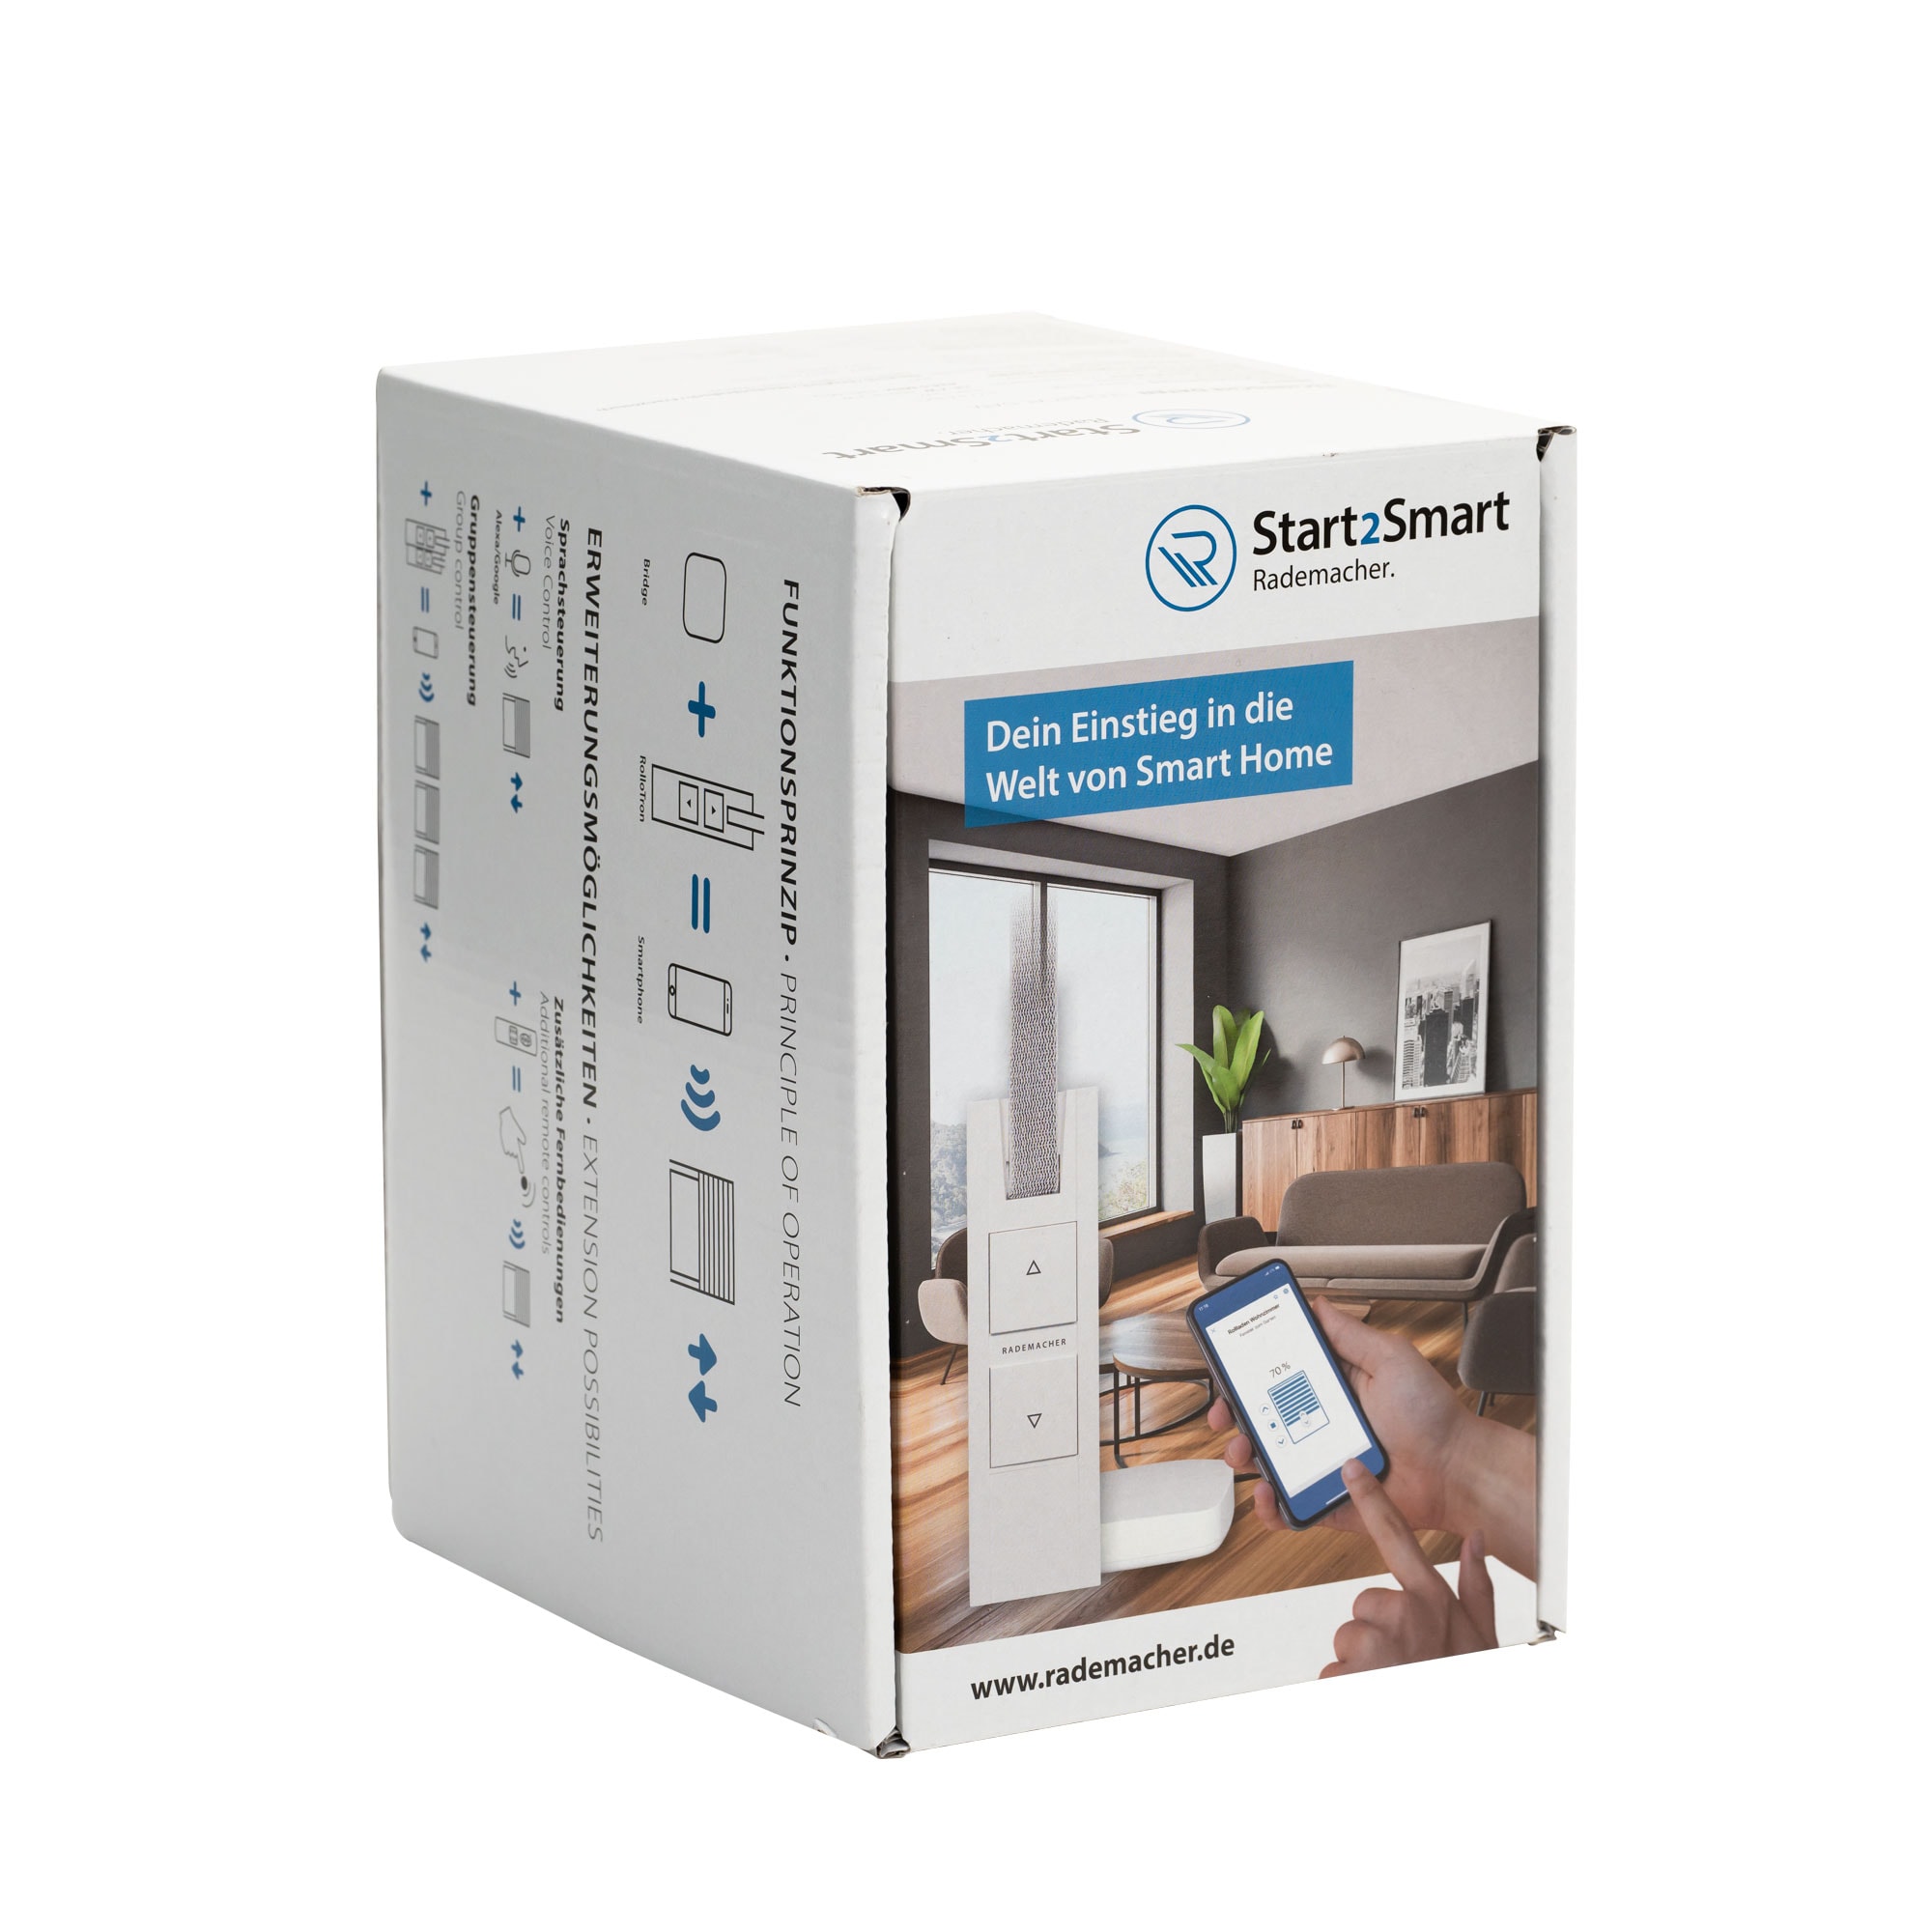 Rademacher Start2Smart Kit Gurtwickler Smart Home RolloTron inkl Bridge 9492 set Zeer populair, lage prijs